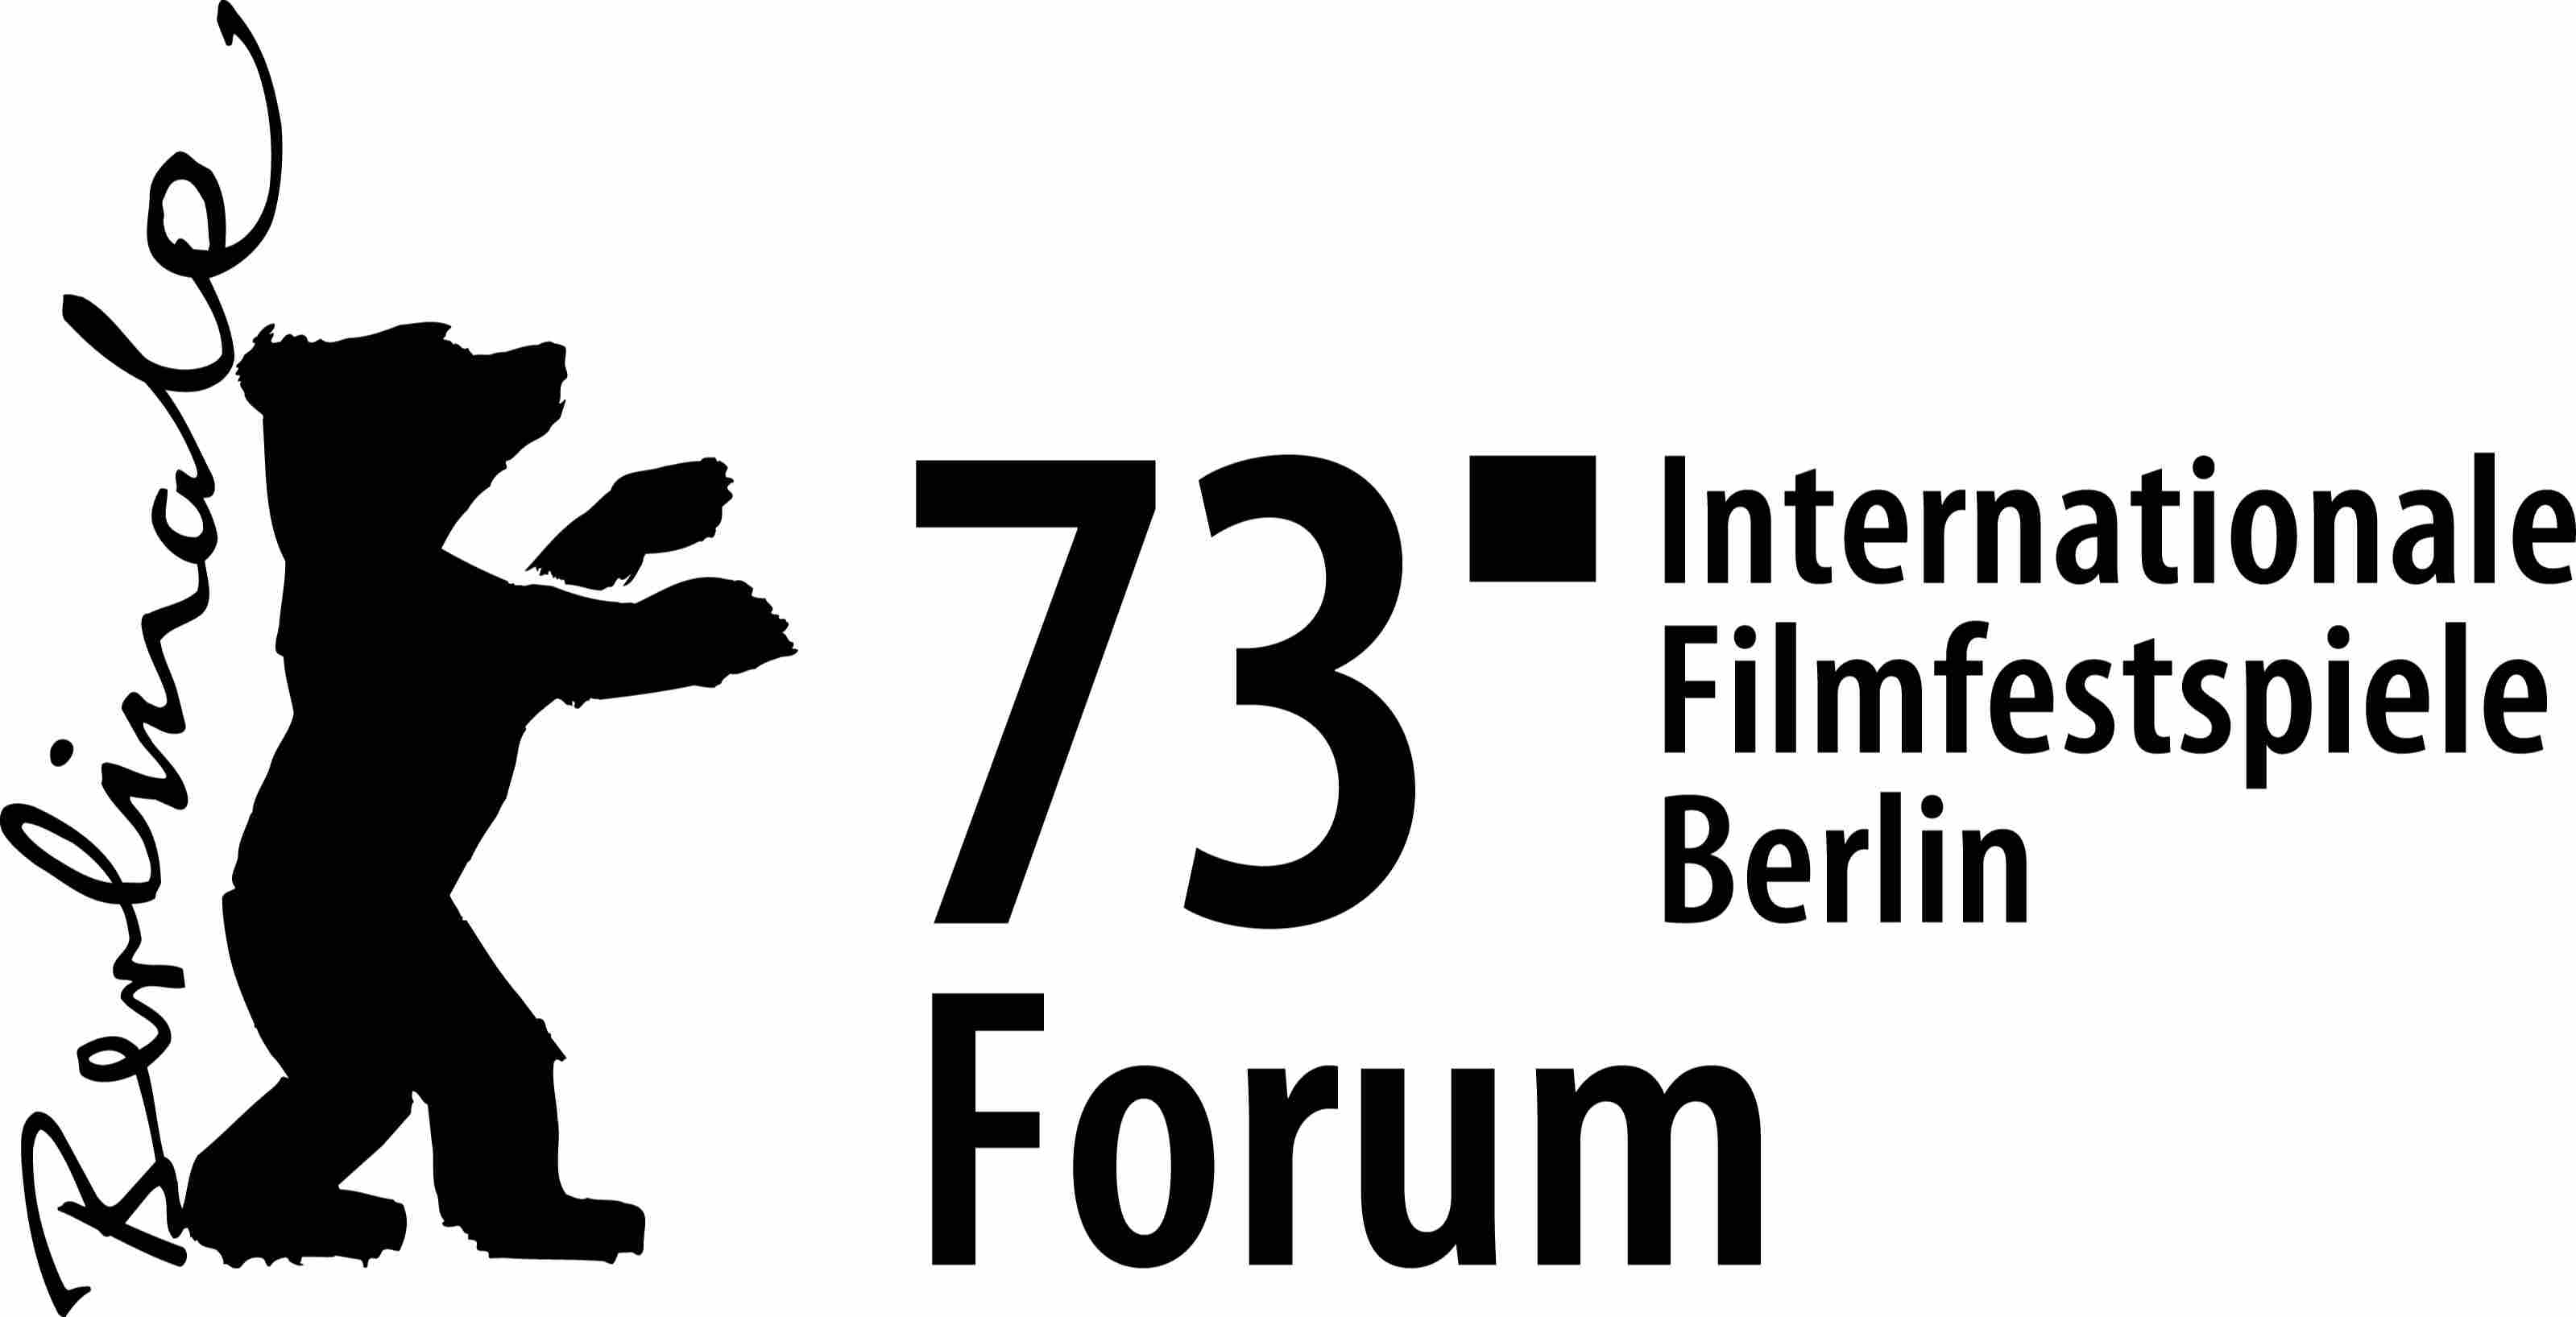 Berlinale 73 - Forum